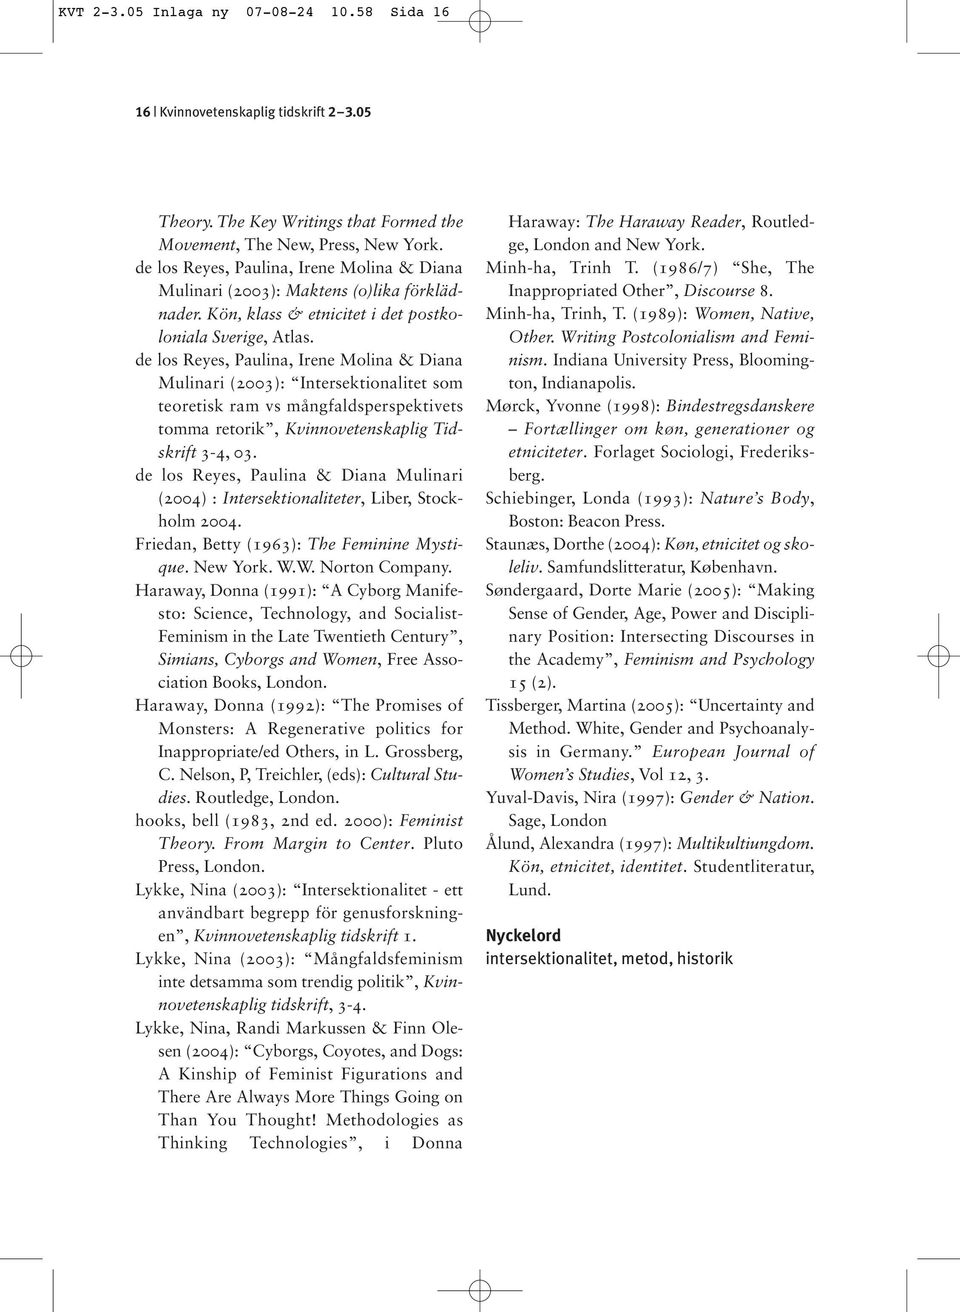 de los Reyes, Paulina, Irene Molina & Diana Mulinari (2003): Intersektionalitet som teoretisk ram vs mångfaldsperspektivets tomma retorik, Kvinnovetenskaplig Tidskrift 3-4, 03.